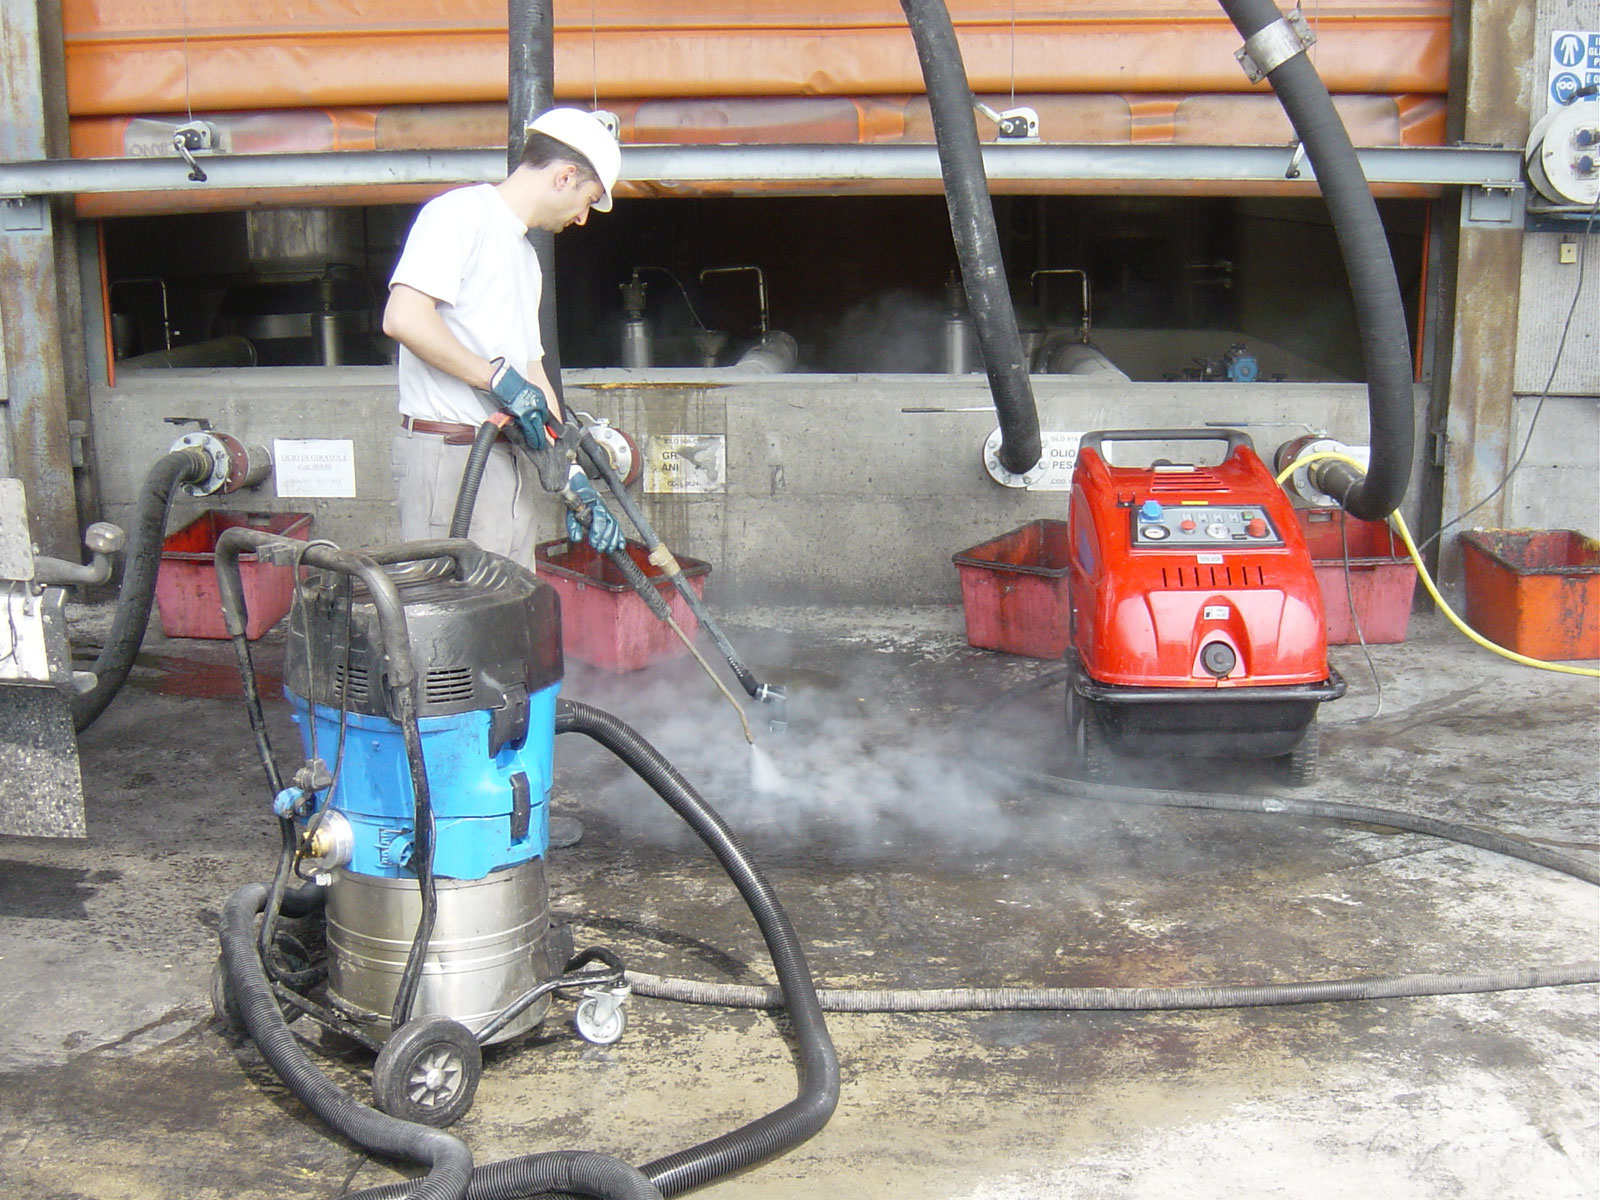 Pulizie pavimenti industriali con idropulitrice acqua calda a Brescia